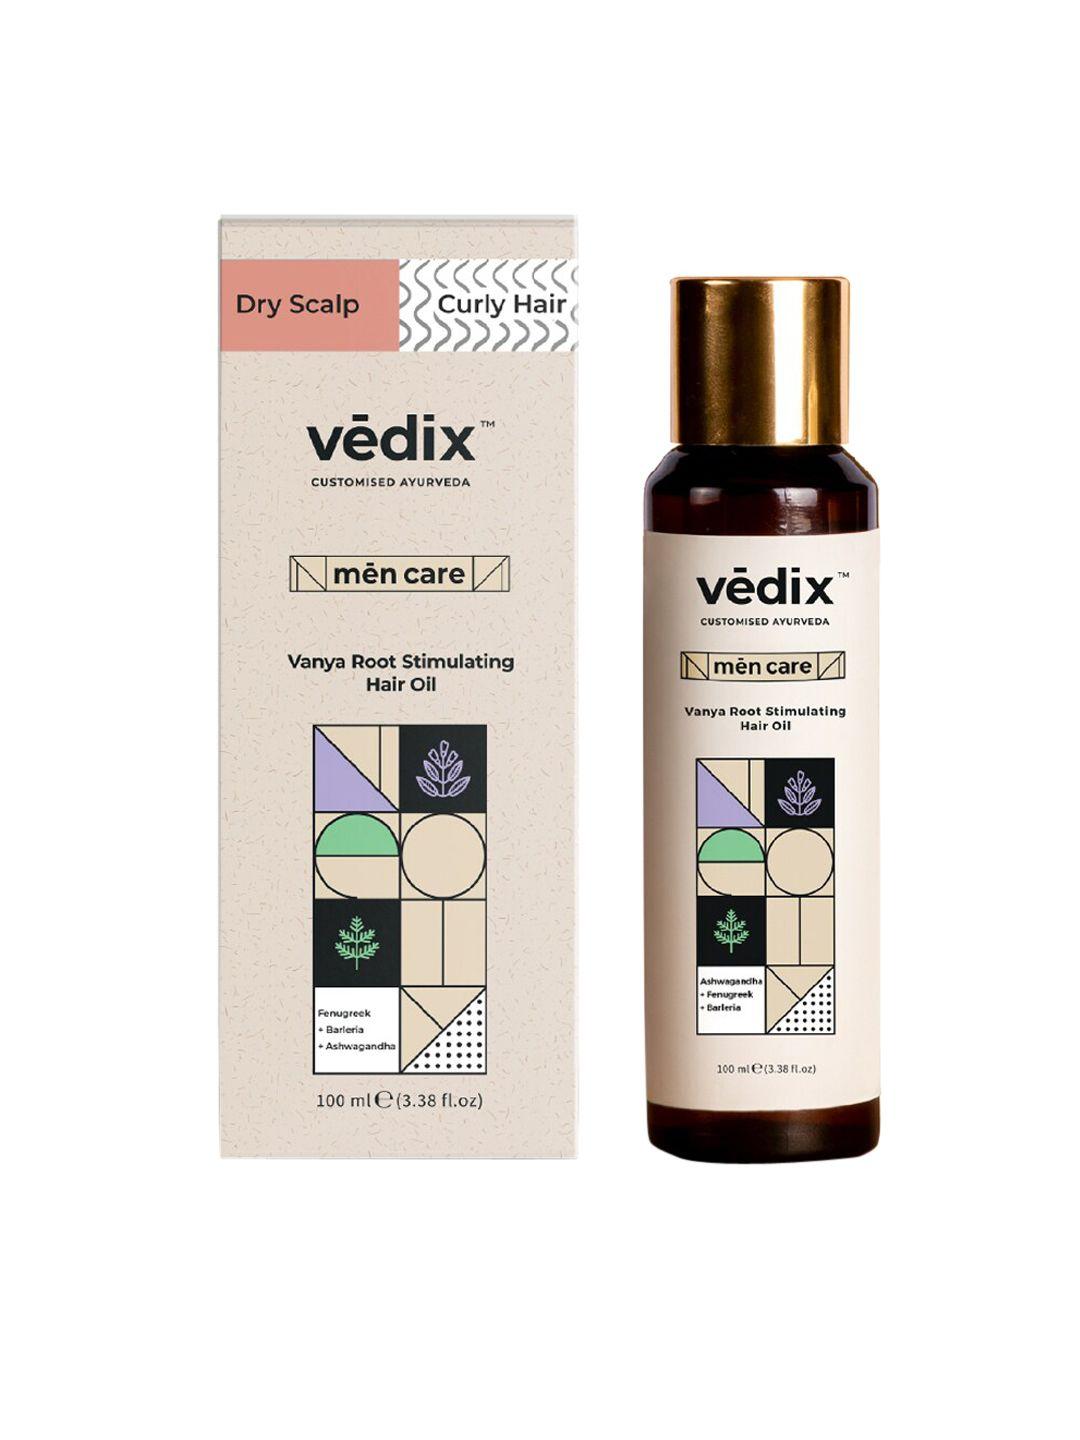 vedix men customized ayurvedic anti hairfall vanya root stimulating hair oil